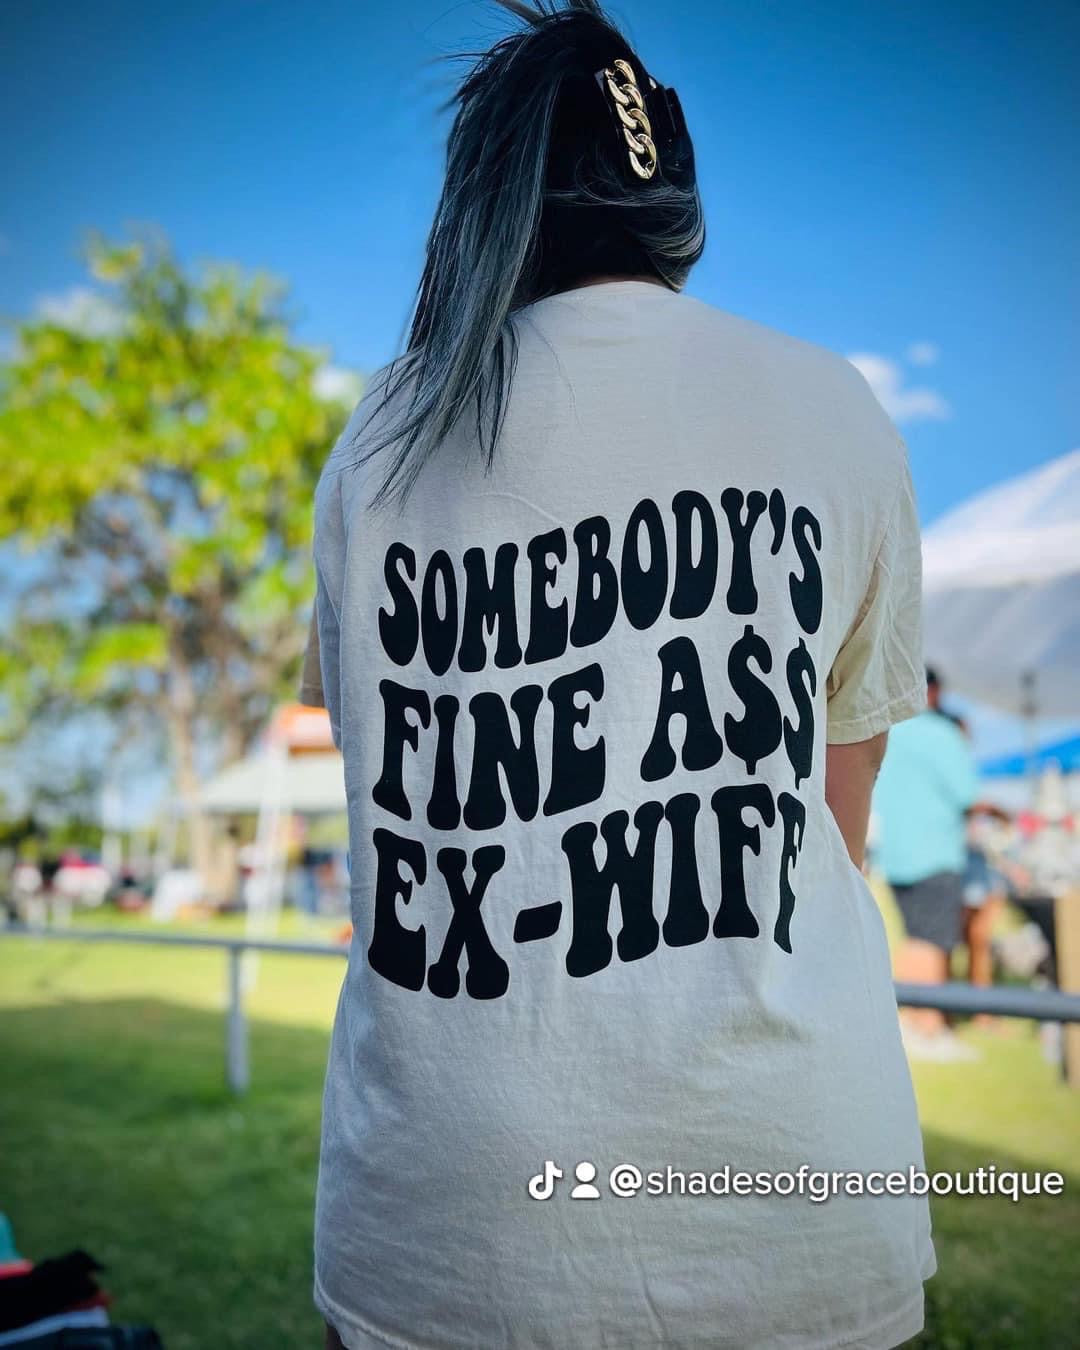 Fine ass ex wife